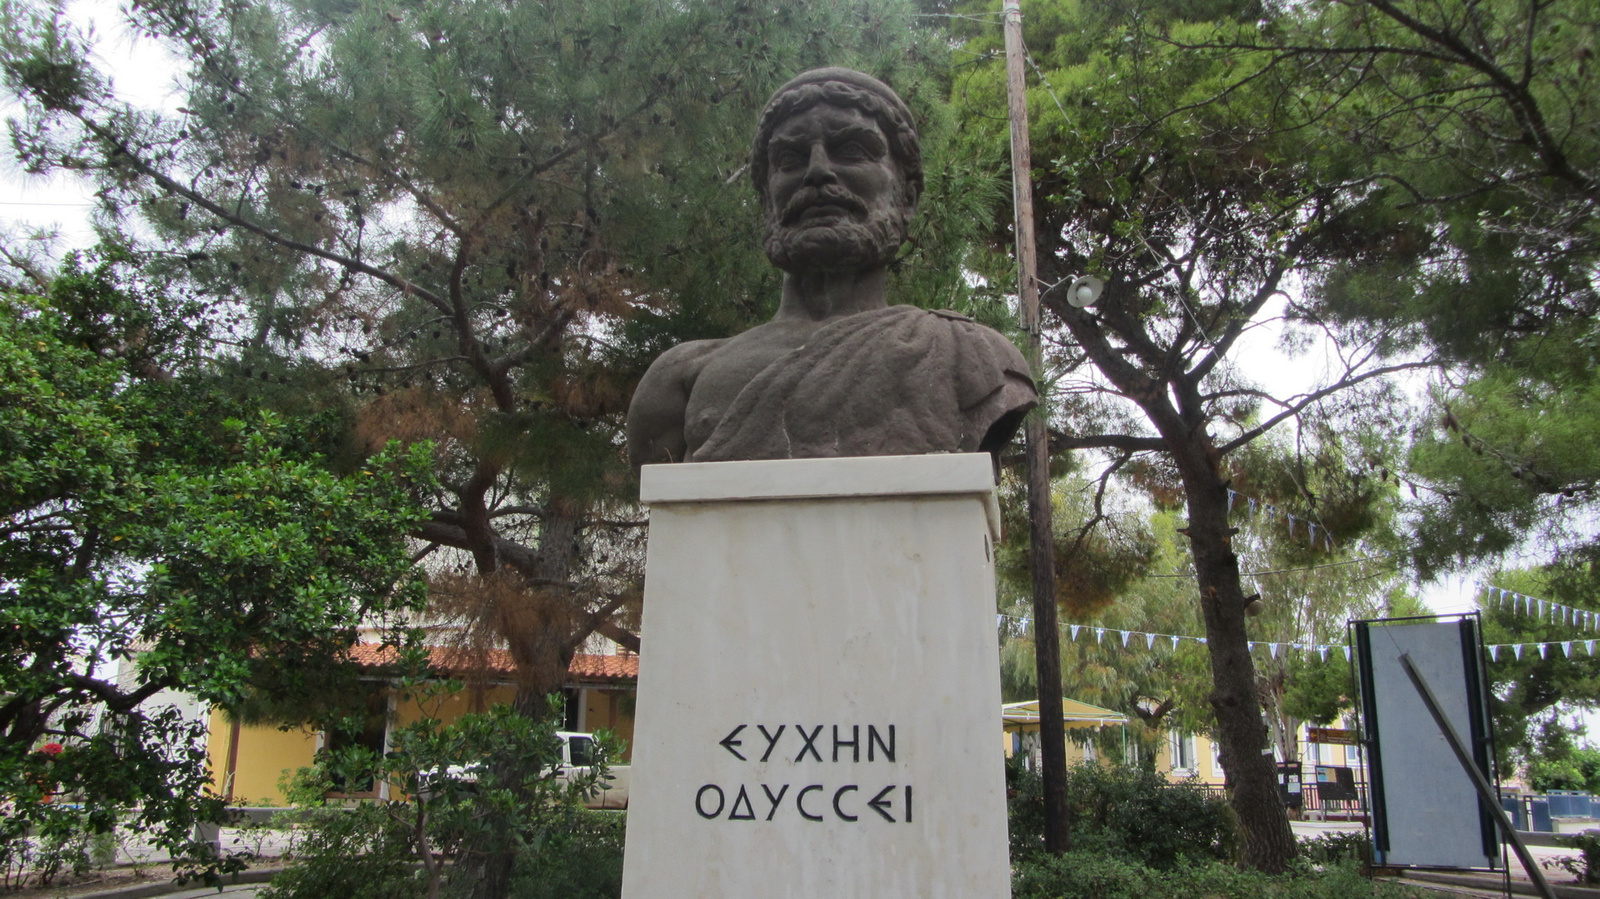 Odüsszeusz,Ithaka királya